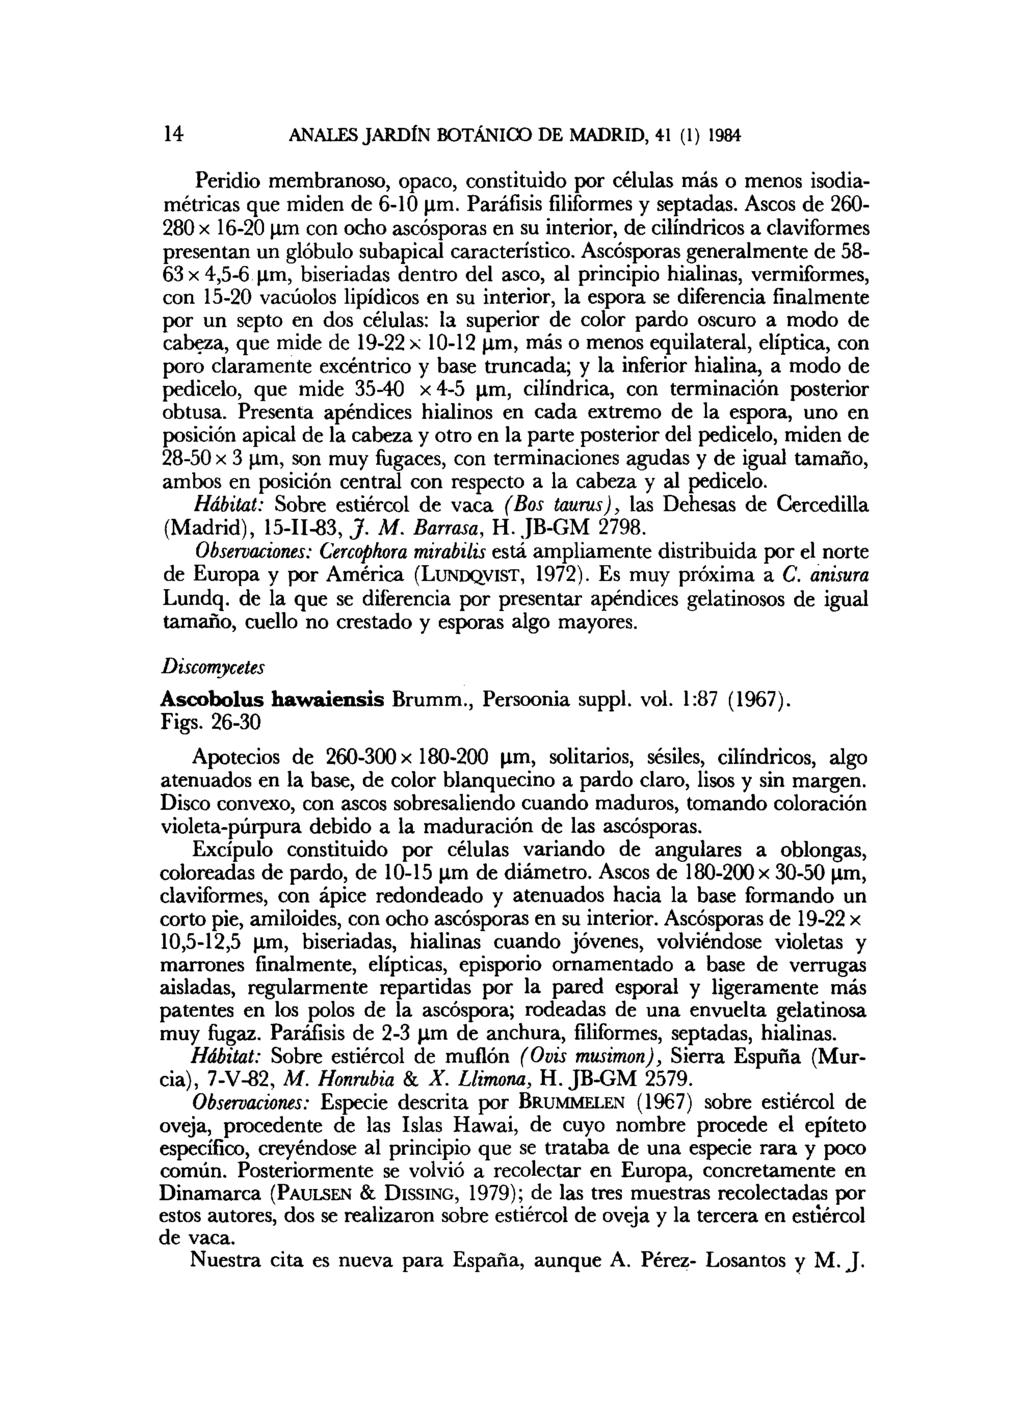 14 ANALES JARDÍN BOTÁNICO DE MADRID, 41 (1) 1984 Peridio membranoso, opaco, constituido por células más o menos isodiamétricas que miden de 6-10 um. Paráfisis filiformes y septadas.